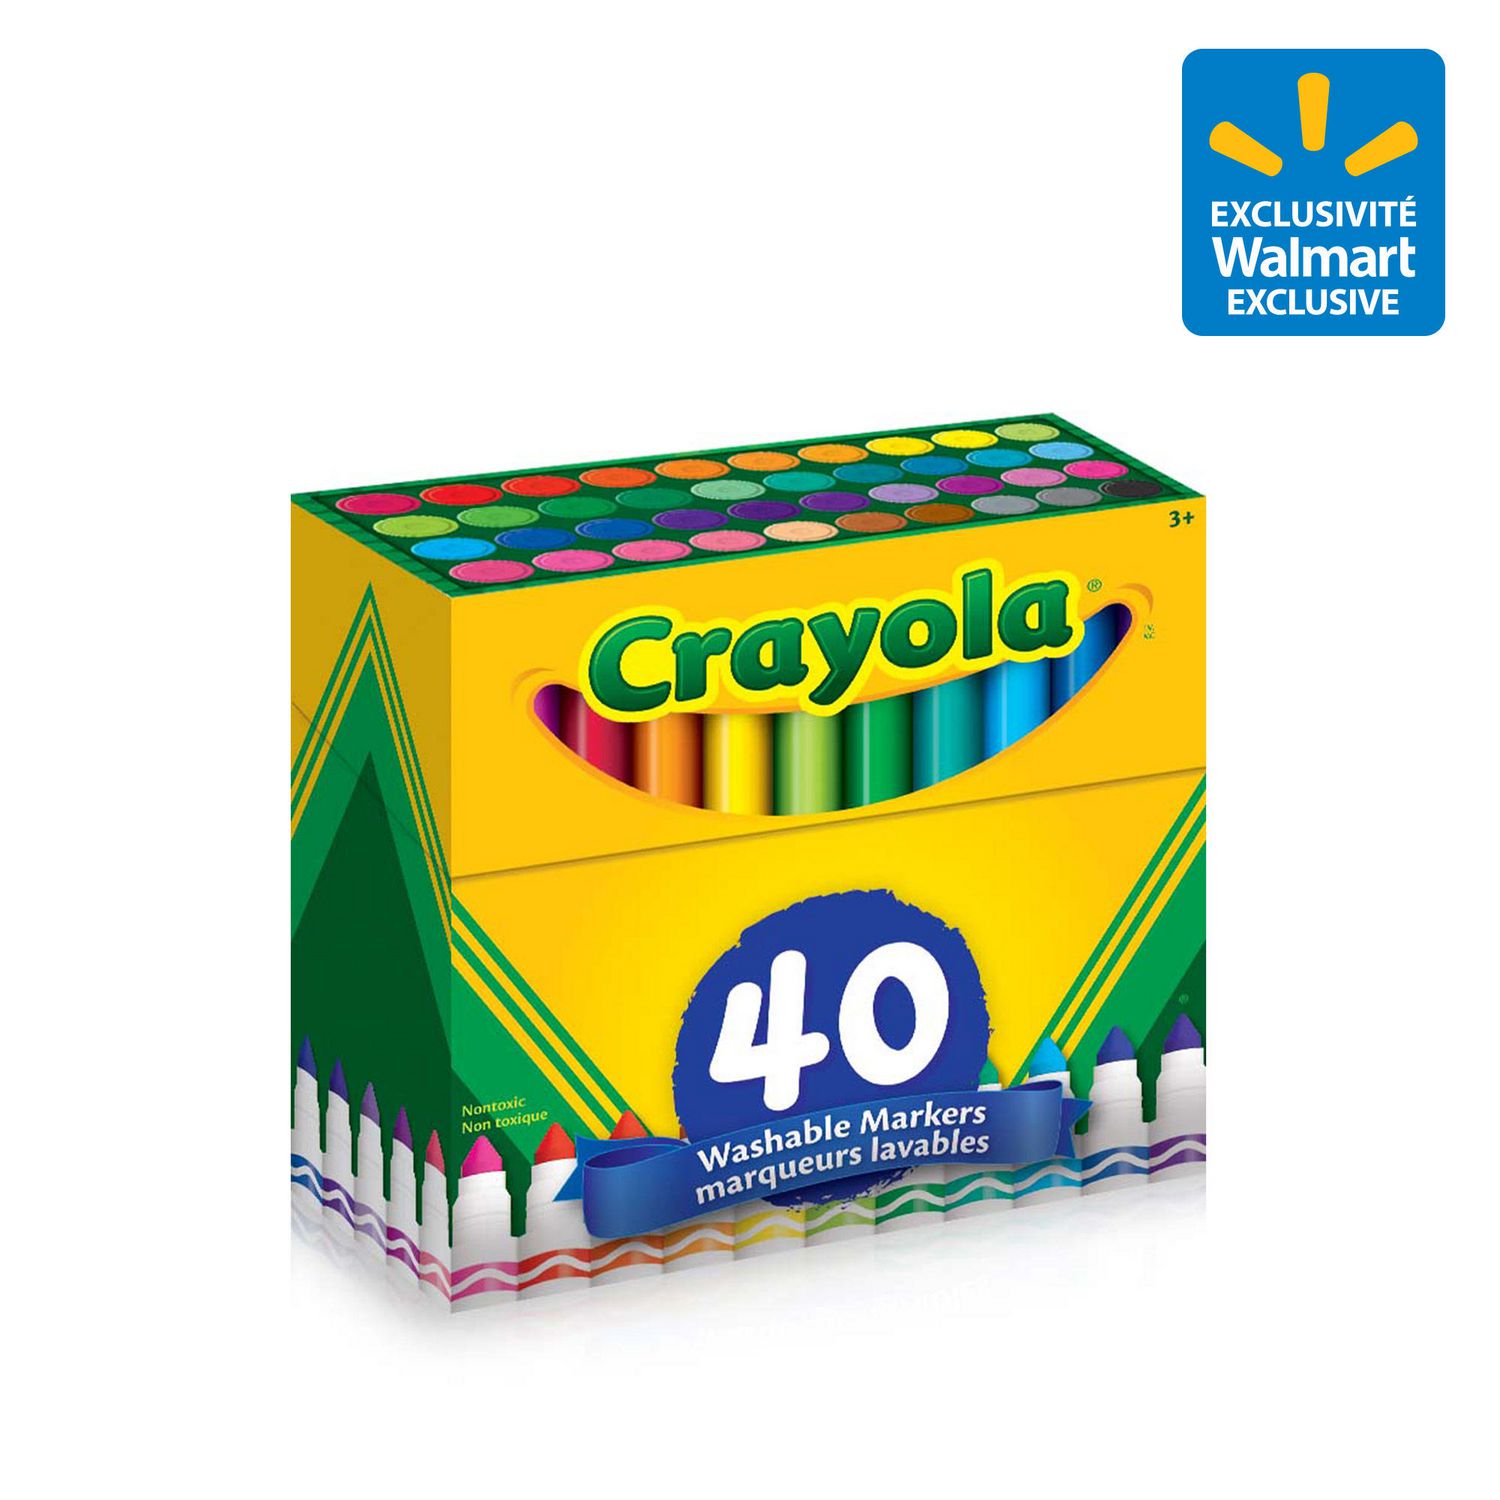 Marqueurs lavables Crayola® super pointes - Ensemble de 50